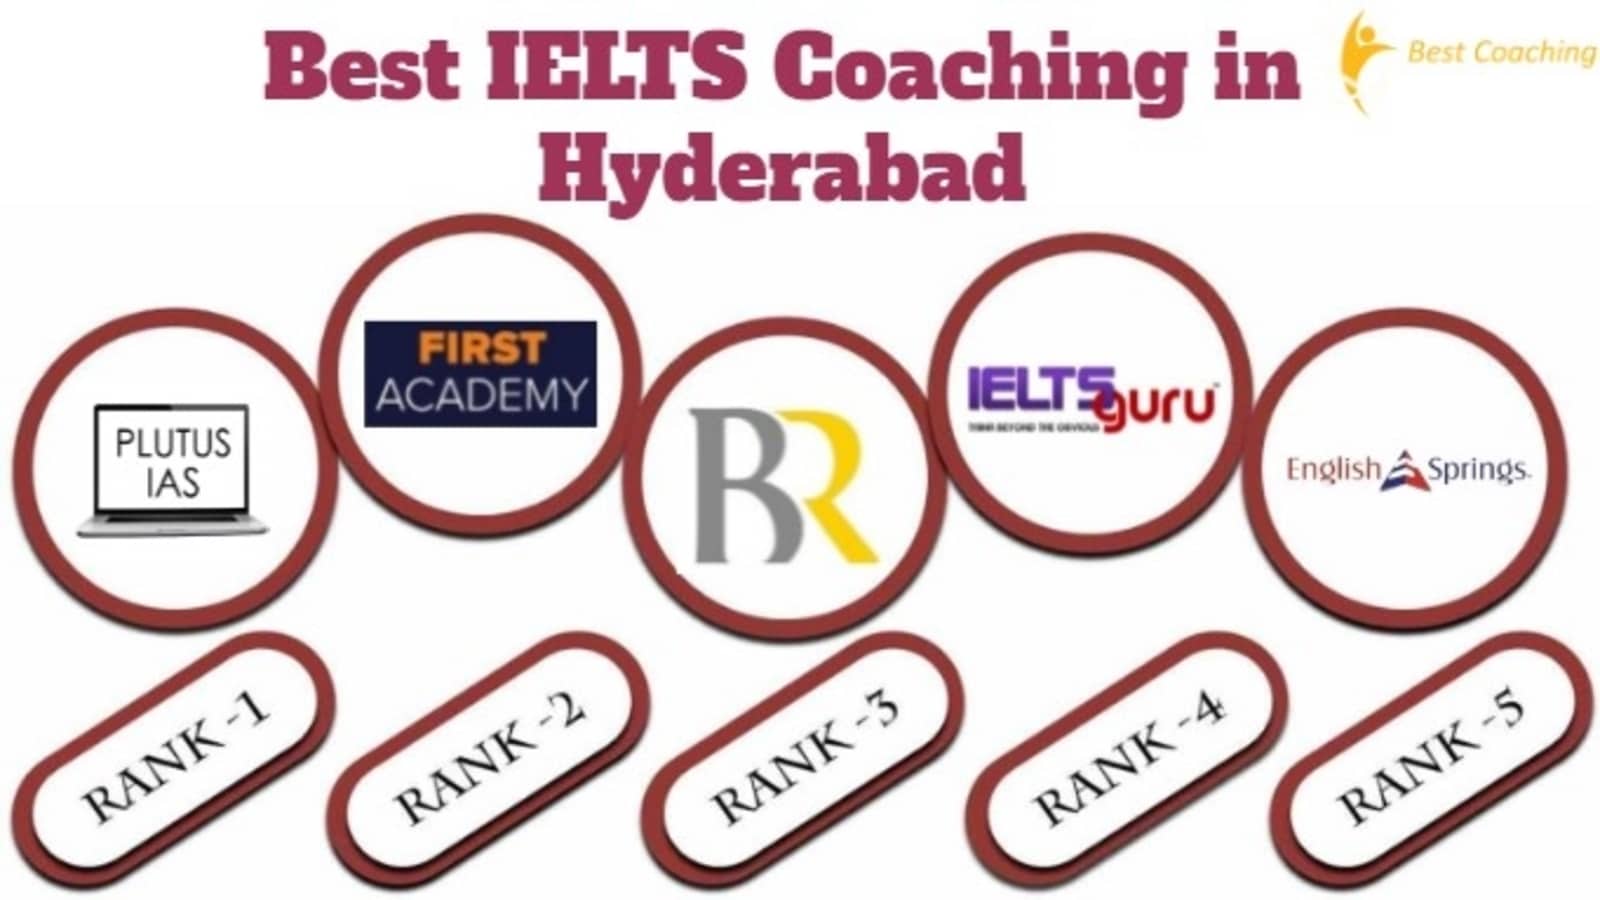 Best IELTS Coaching in Hyderabad